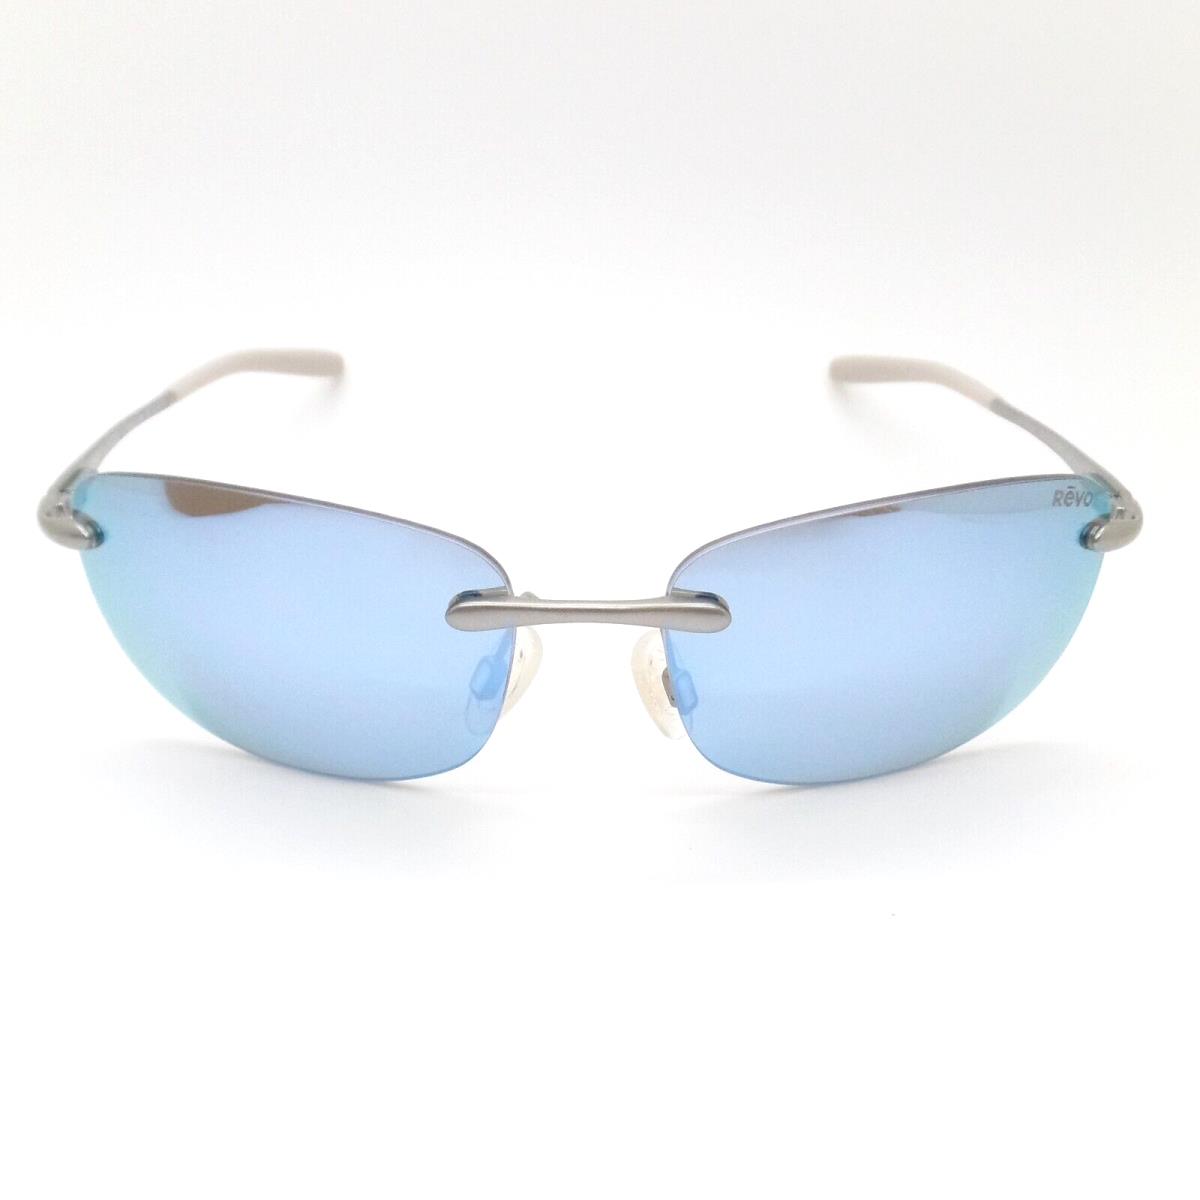 Revo sunglasses Outlander - Light Gunmetal Frame, Blue Water Lens 1